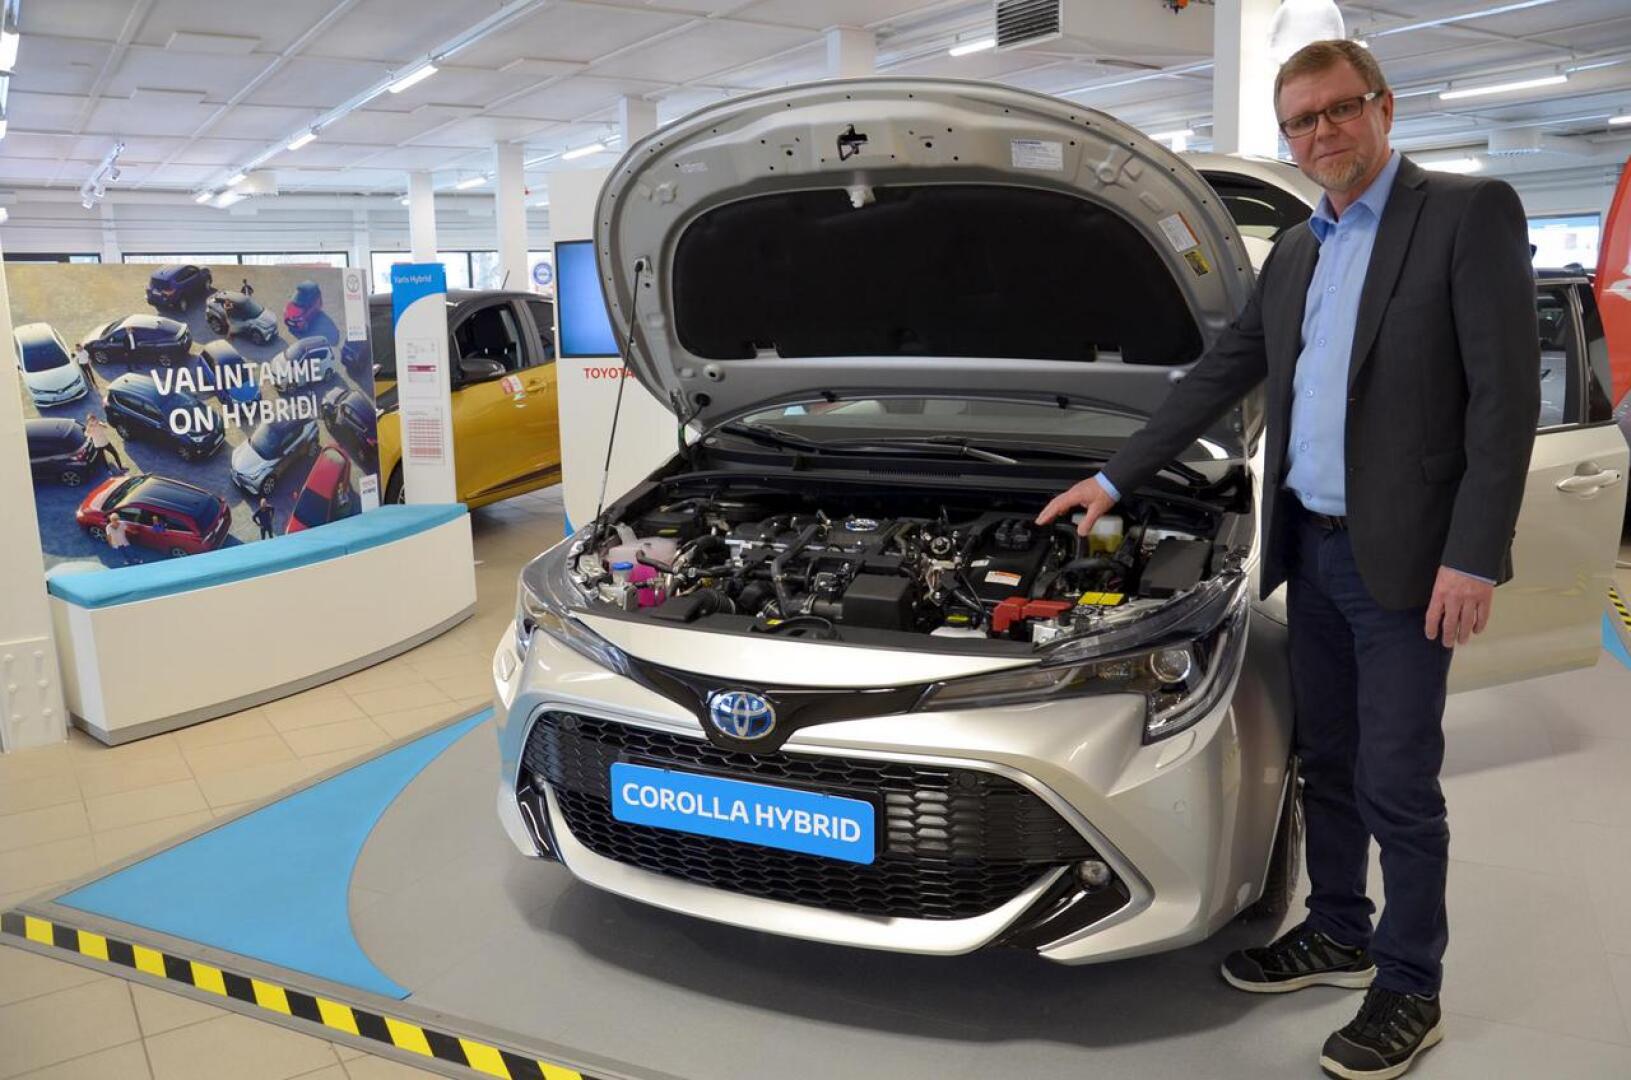 Pieni musta laatikko moottoritilassa paljastaa Corollan hybridiksi. Automyyjä Juha Saaren mukaan hybiridistä on tullut arkipäivän autotekniikkaa kuluttajille.